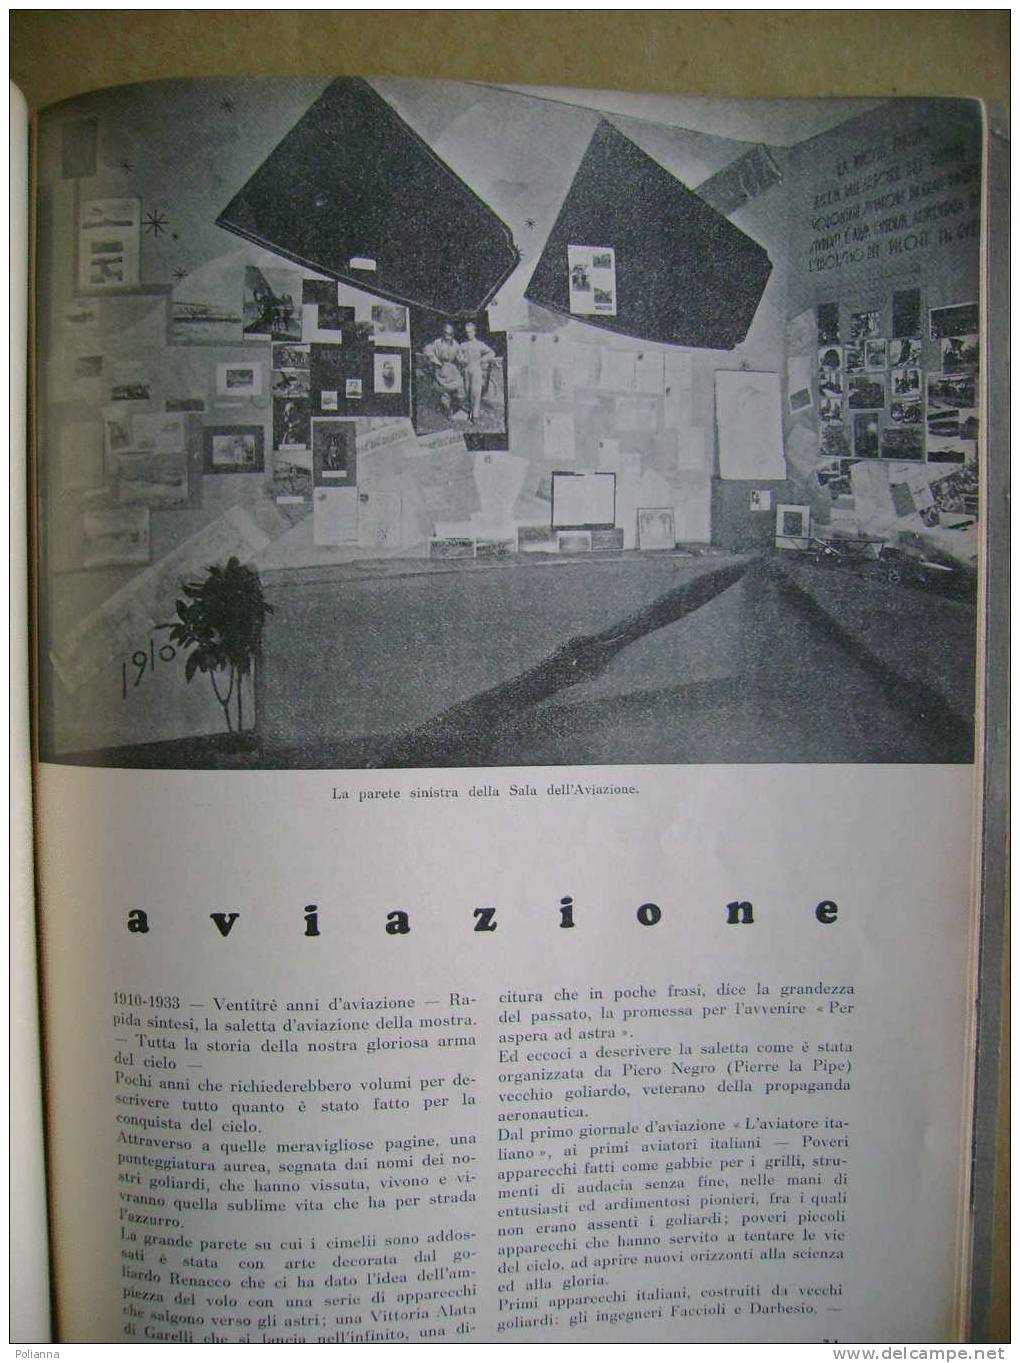 PAF/46 Curreli DENTRO DI NOI LA NEBBIA Approdo 1972 / Piemontese - Disegni Di Eugenio Comencini - Poëzie